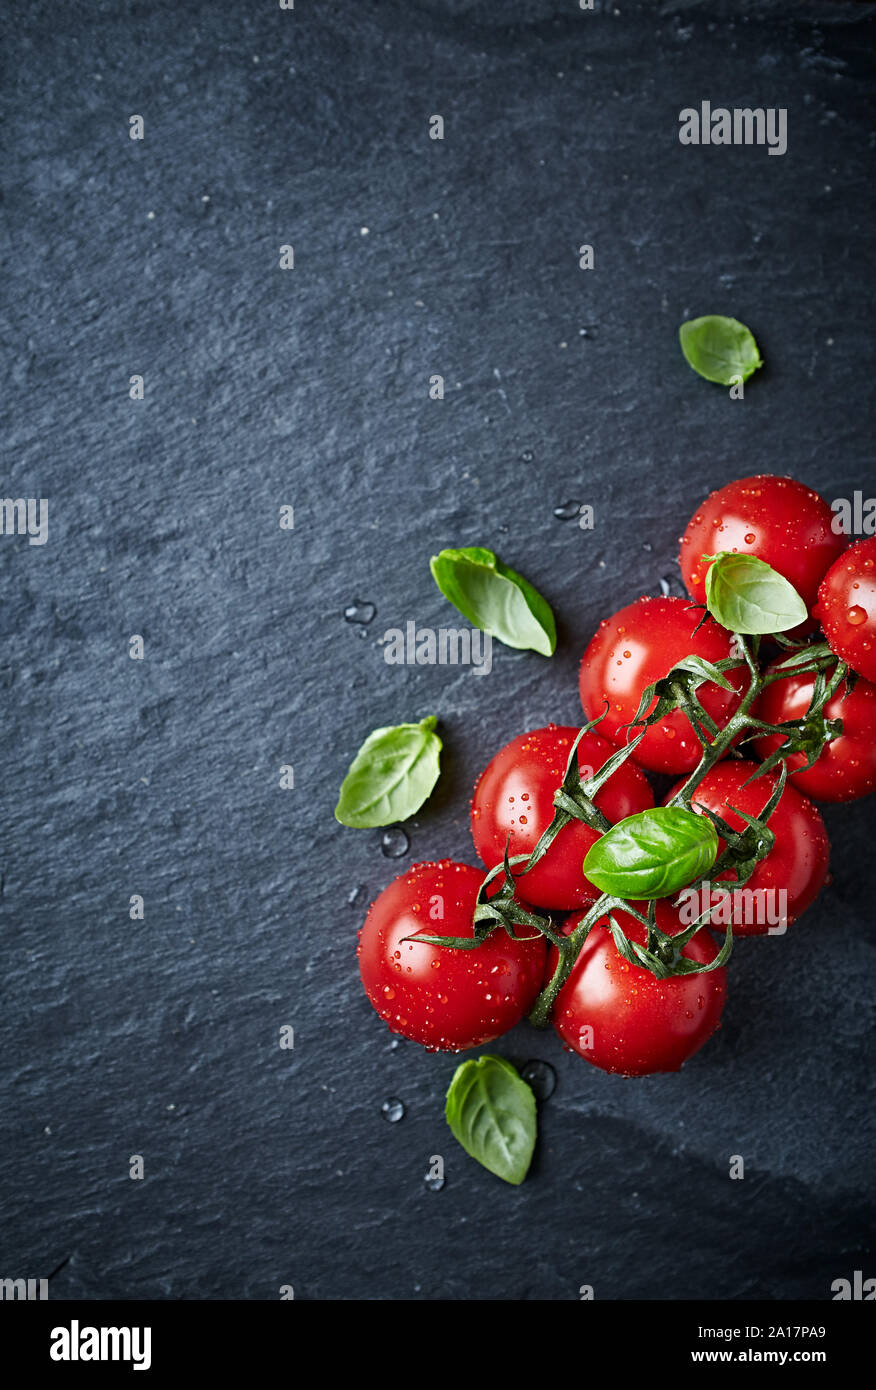 Pomodori ciliegia sulla vite con foglie di basilico sulla pietra nera dello sfondo. Concetto di alimentazione sana. Immagine simbolica. Vista dall'alto. Copia dello spazio. Foto Stock